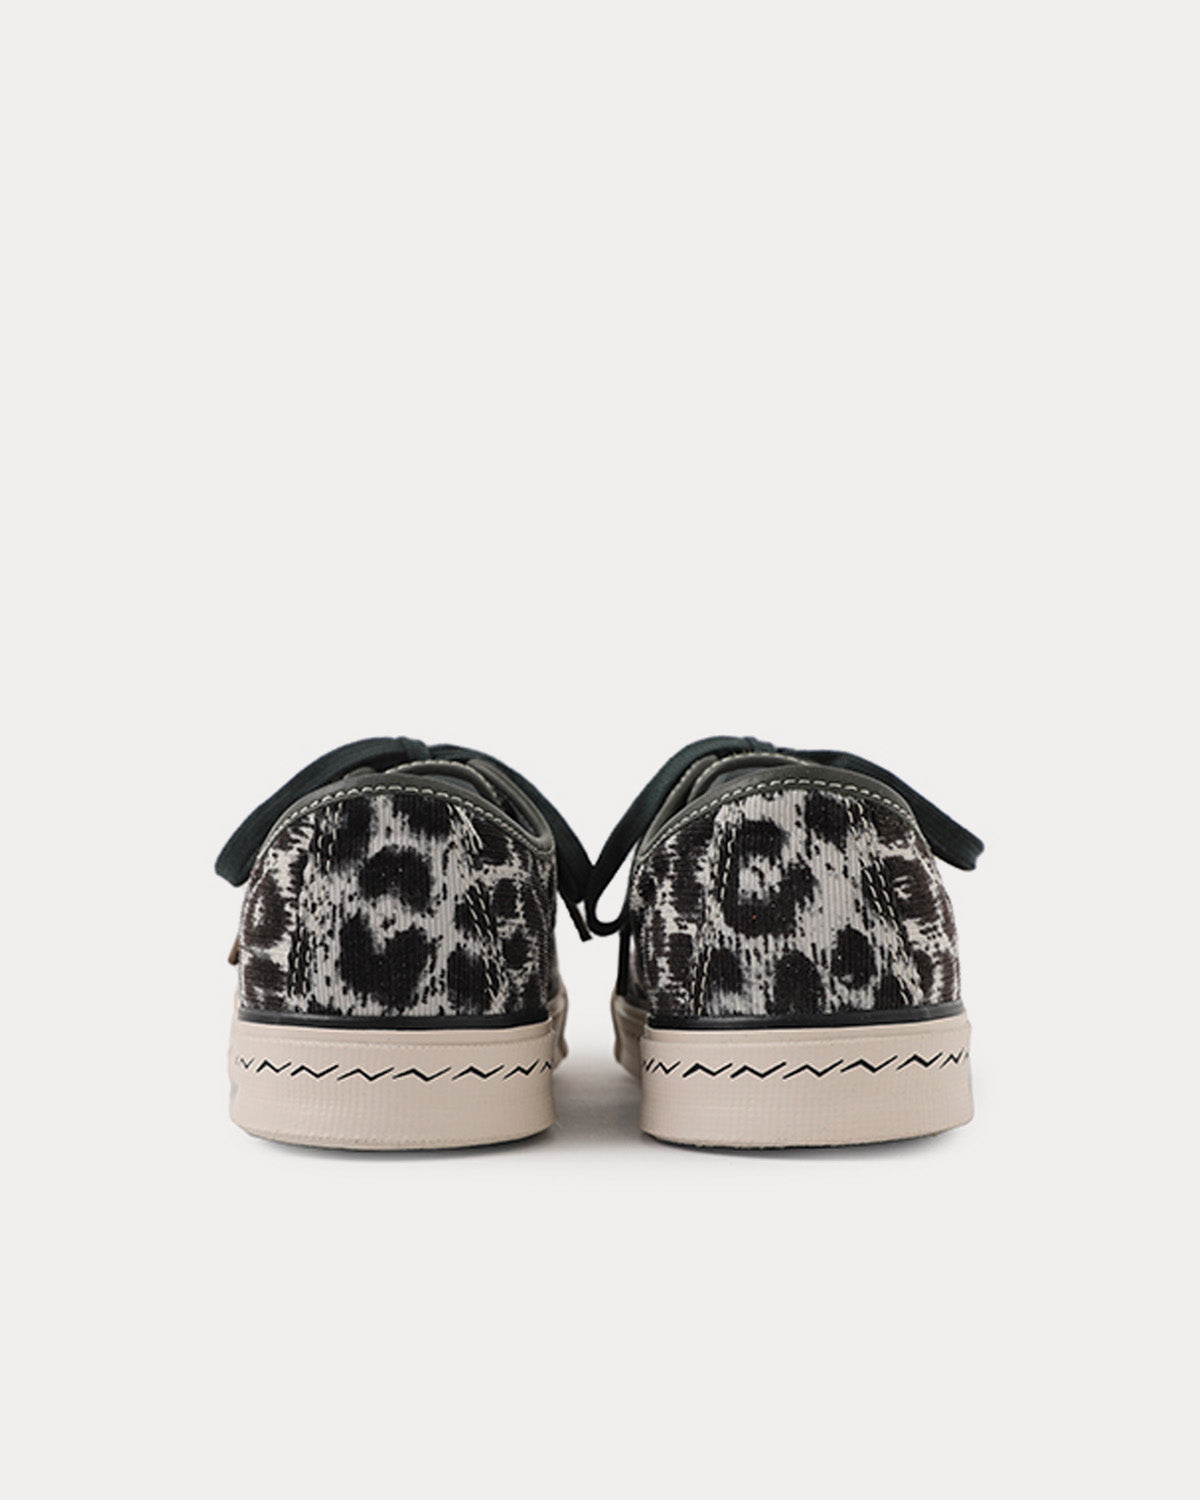 Visvim - Skagway Lo Leopard Grey Low Top Sneakers